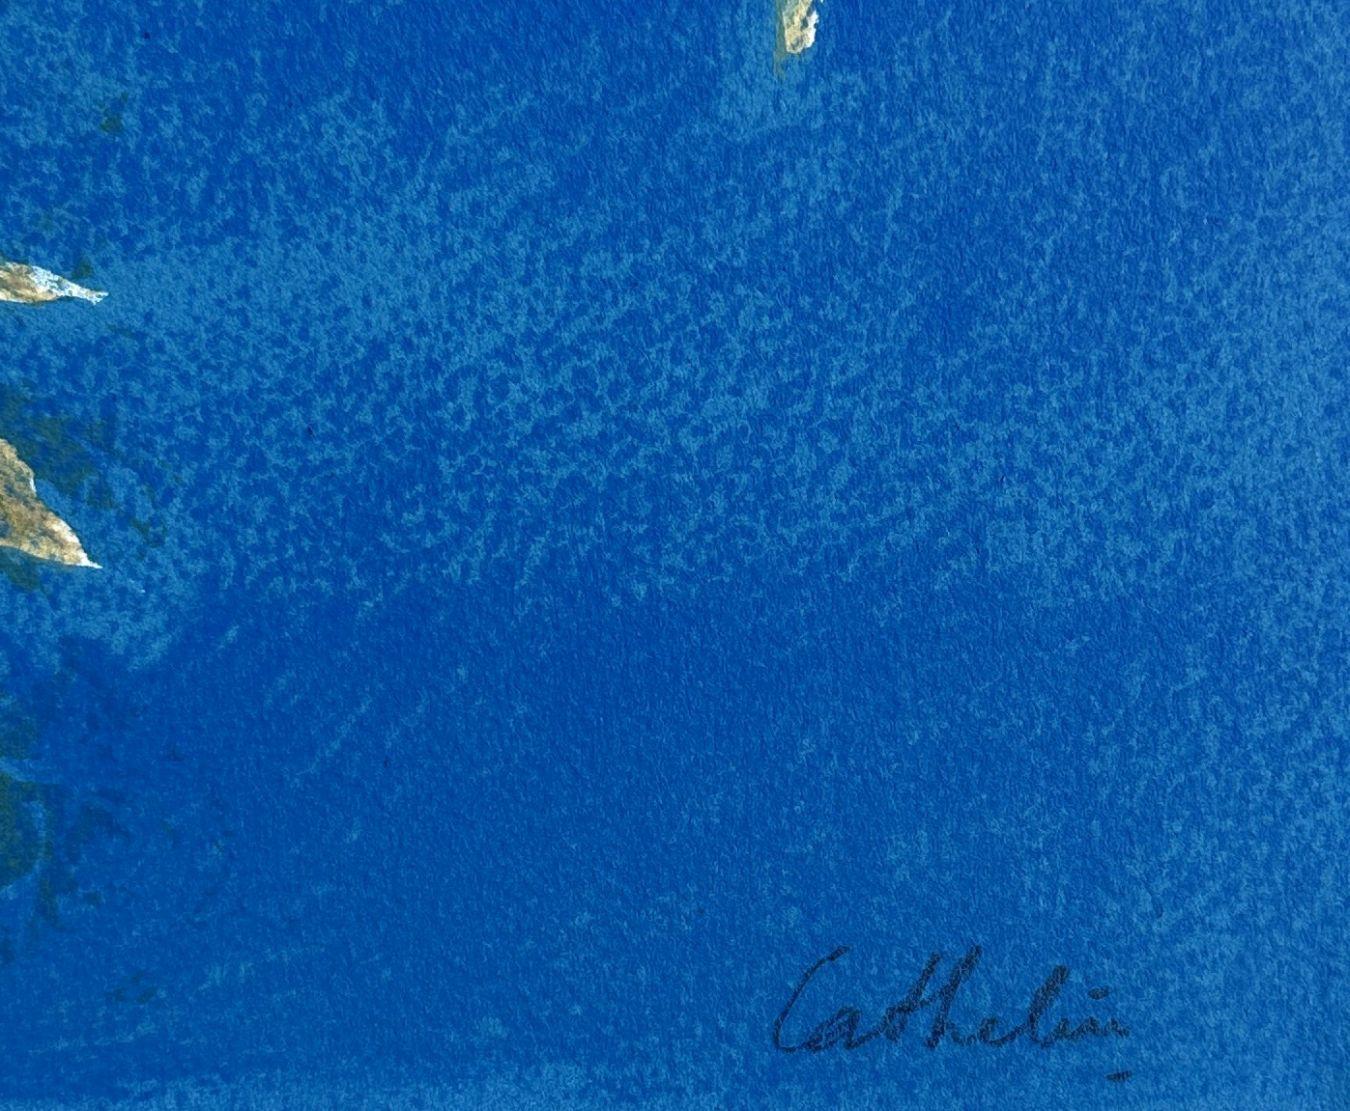 Bernard CATHELIN
Schmetterlinge und Blumen

Original-Lithographie, 1988
Handsigniert mit Bleistift
Eingeschrieben EA (épreuve d'artiste) neben der Auflage von 100 Exemplaren
Auf Arches-Papier, Format 40 x 31 (ca. 15 8/10 x 12 1/5 Zoll)
Sehr guter